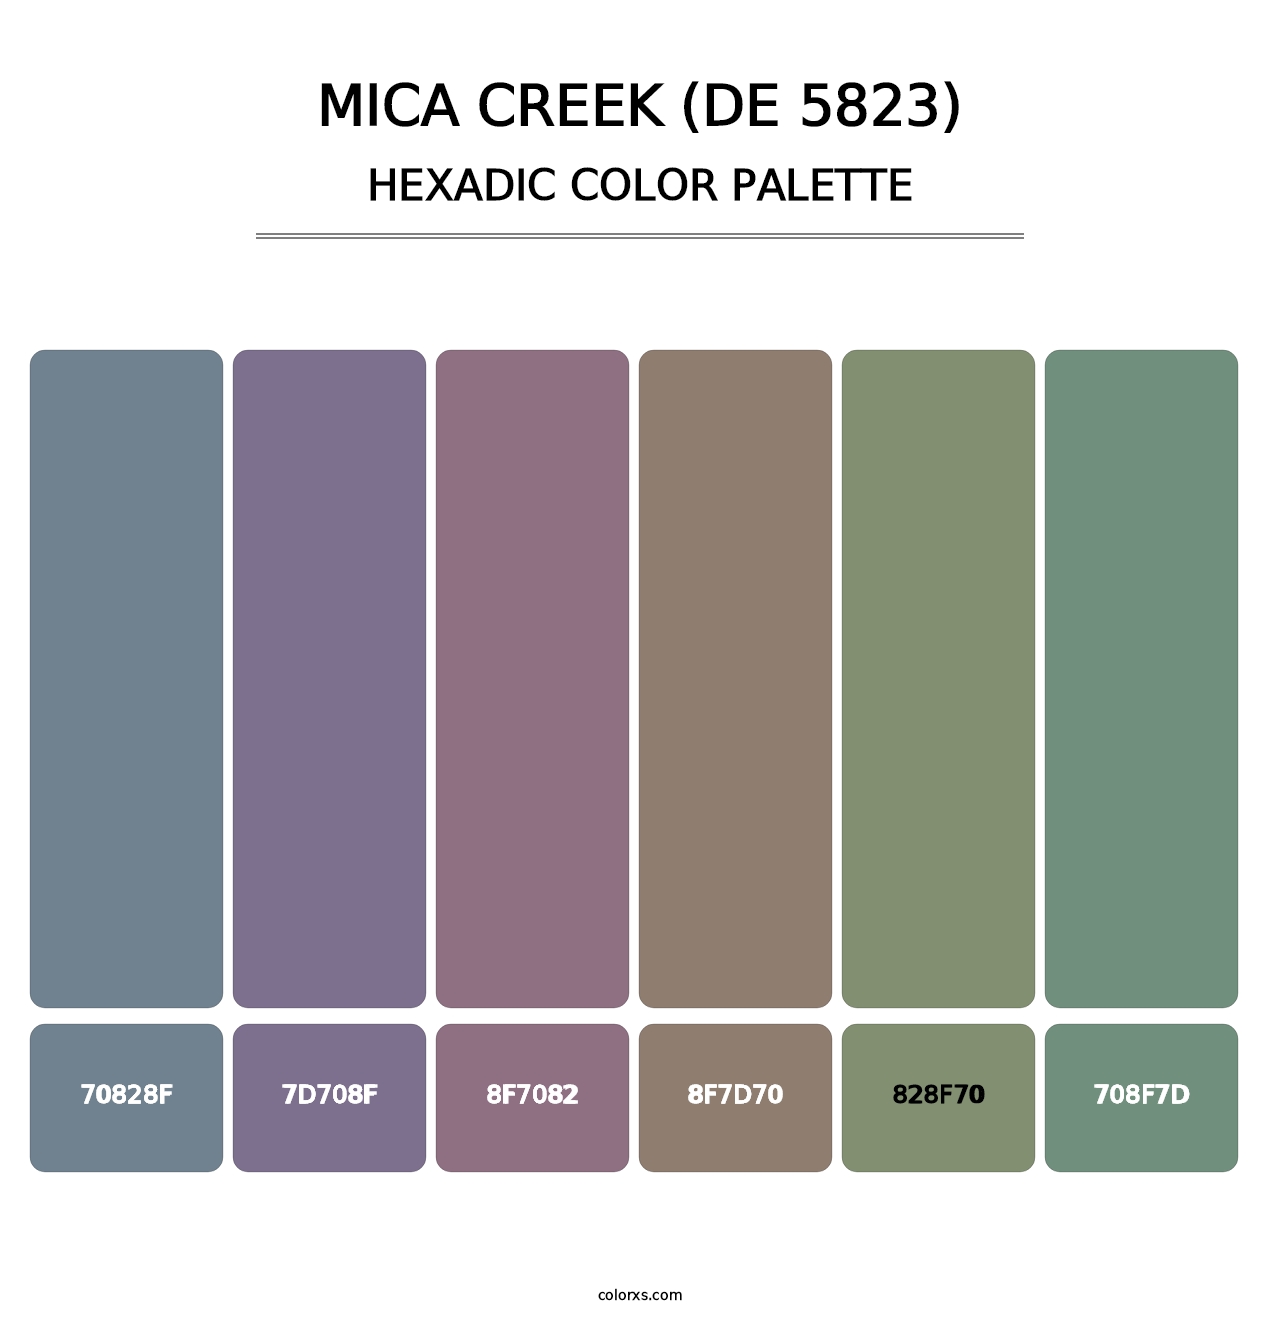 Mica Creek (DE 5823) - Hexadic Color Palette